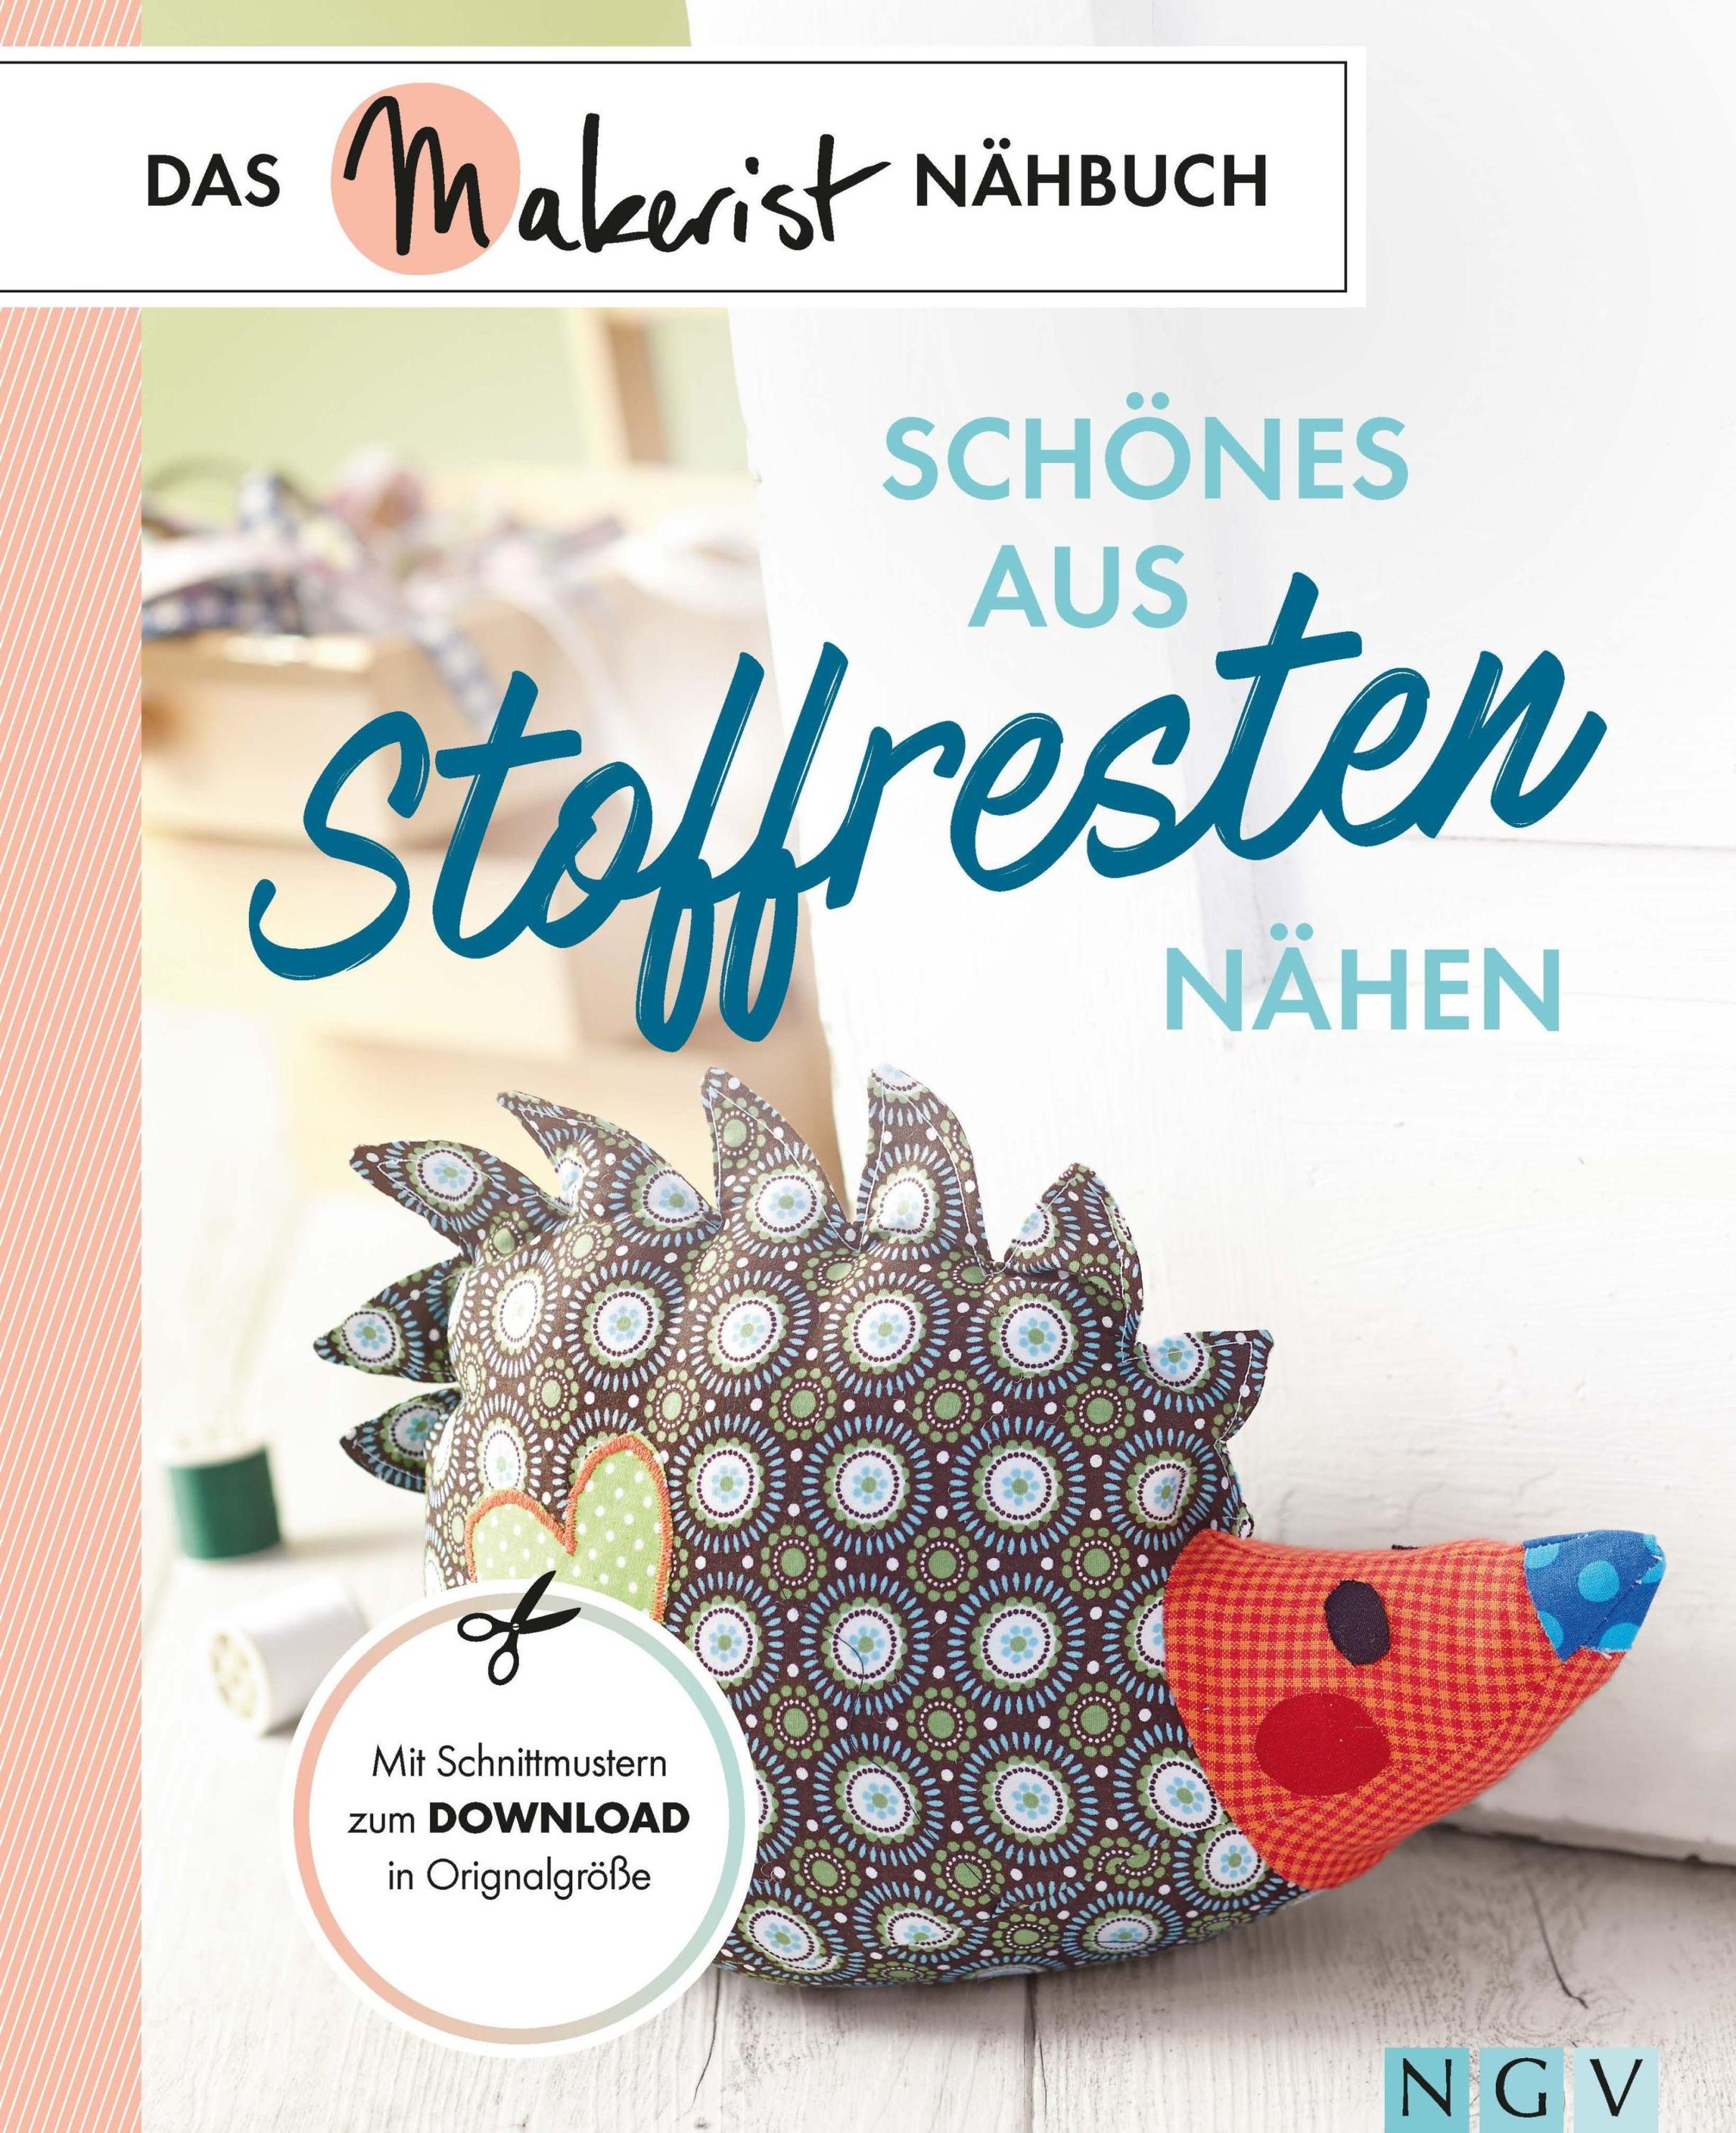 Schönes aus Stoffresten nähen Das Makerist-Nähbuch eBook v. Susanka  Brückner u. weitere | Weltbild